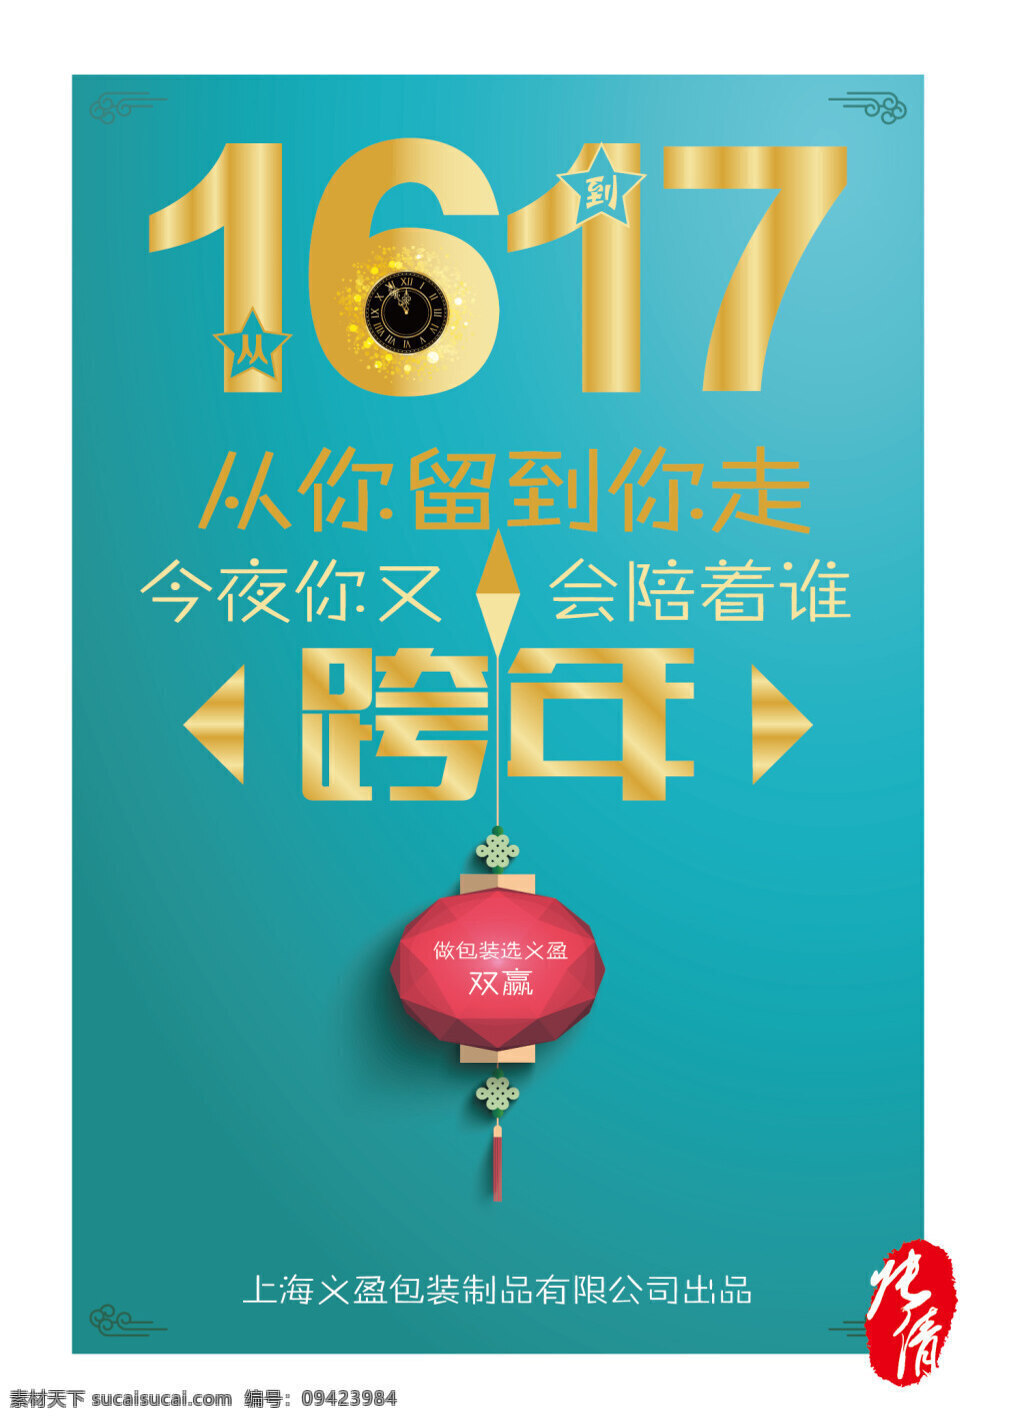 新年跨年海报 张倩作品 2017 年 跨 海报 新年海报 红灯笼 新年展板 中国结 跨年 跨年字体